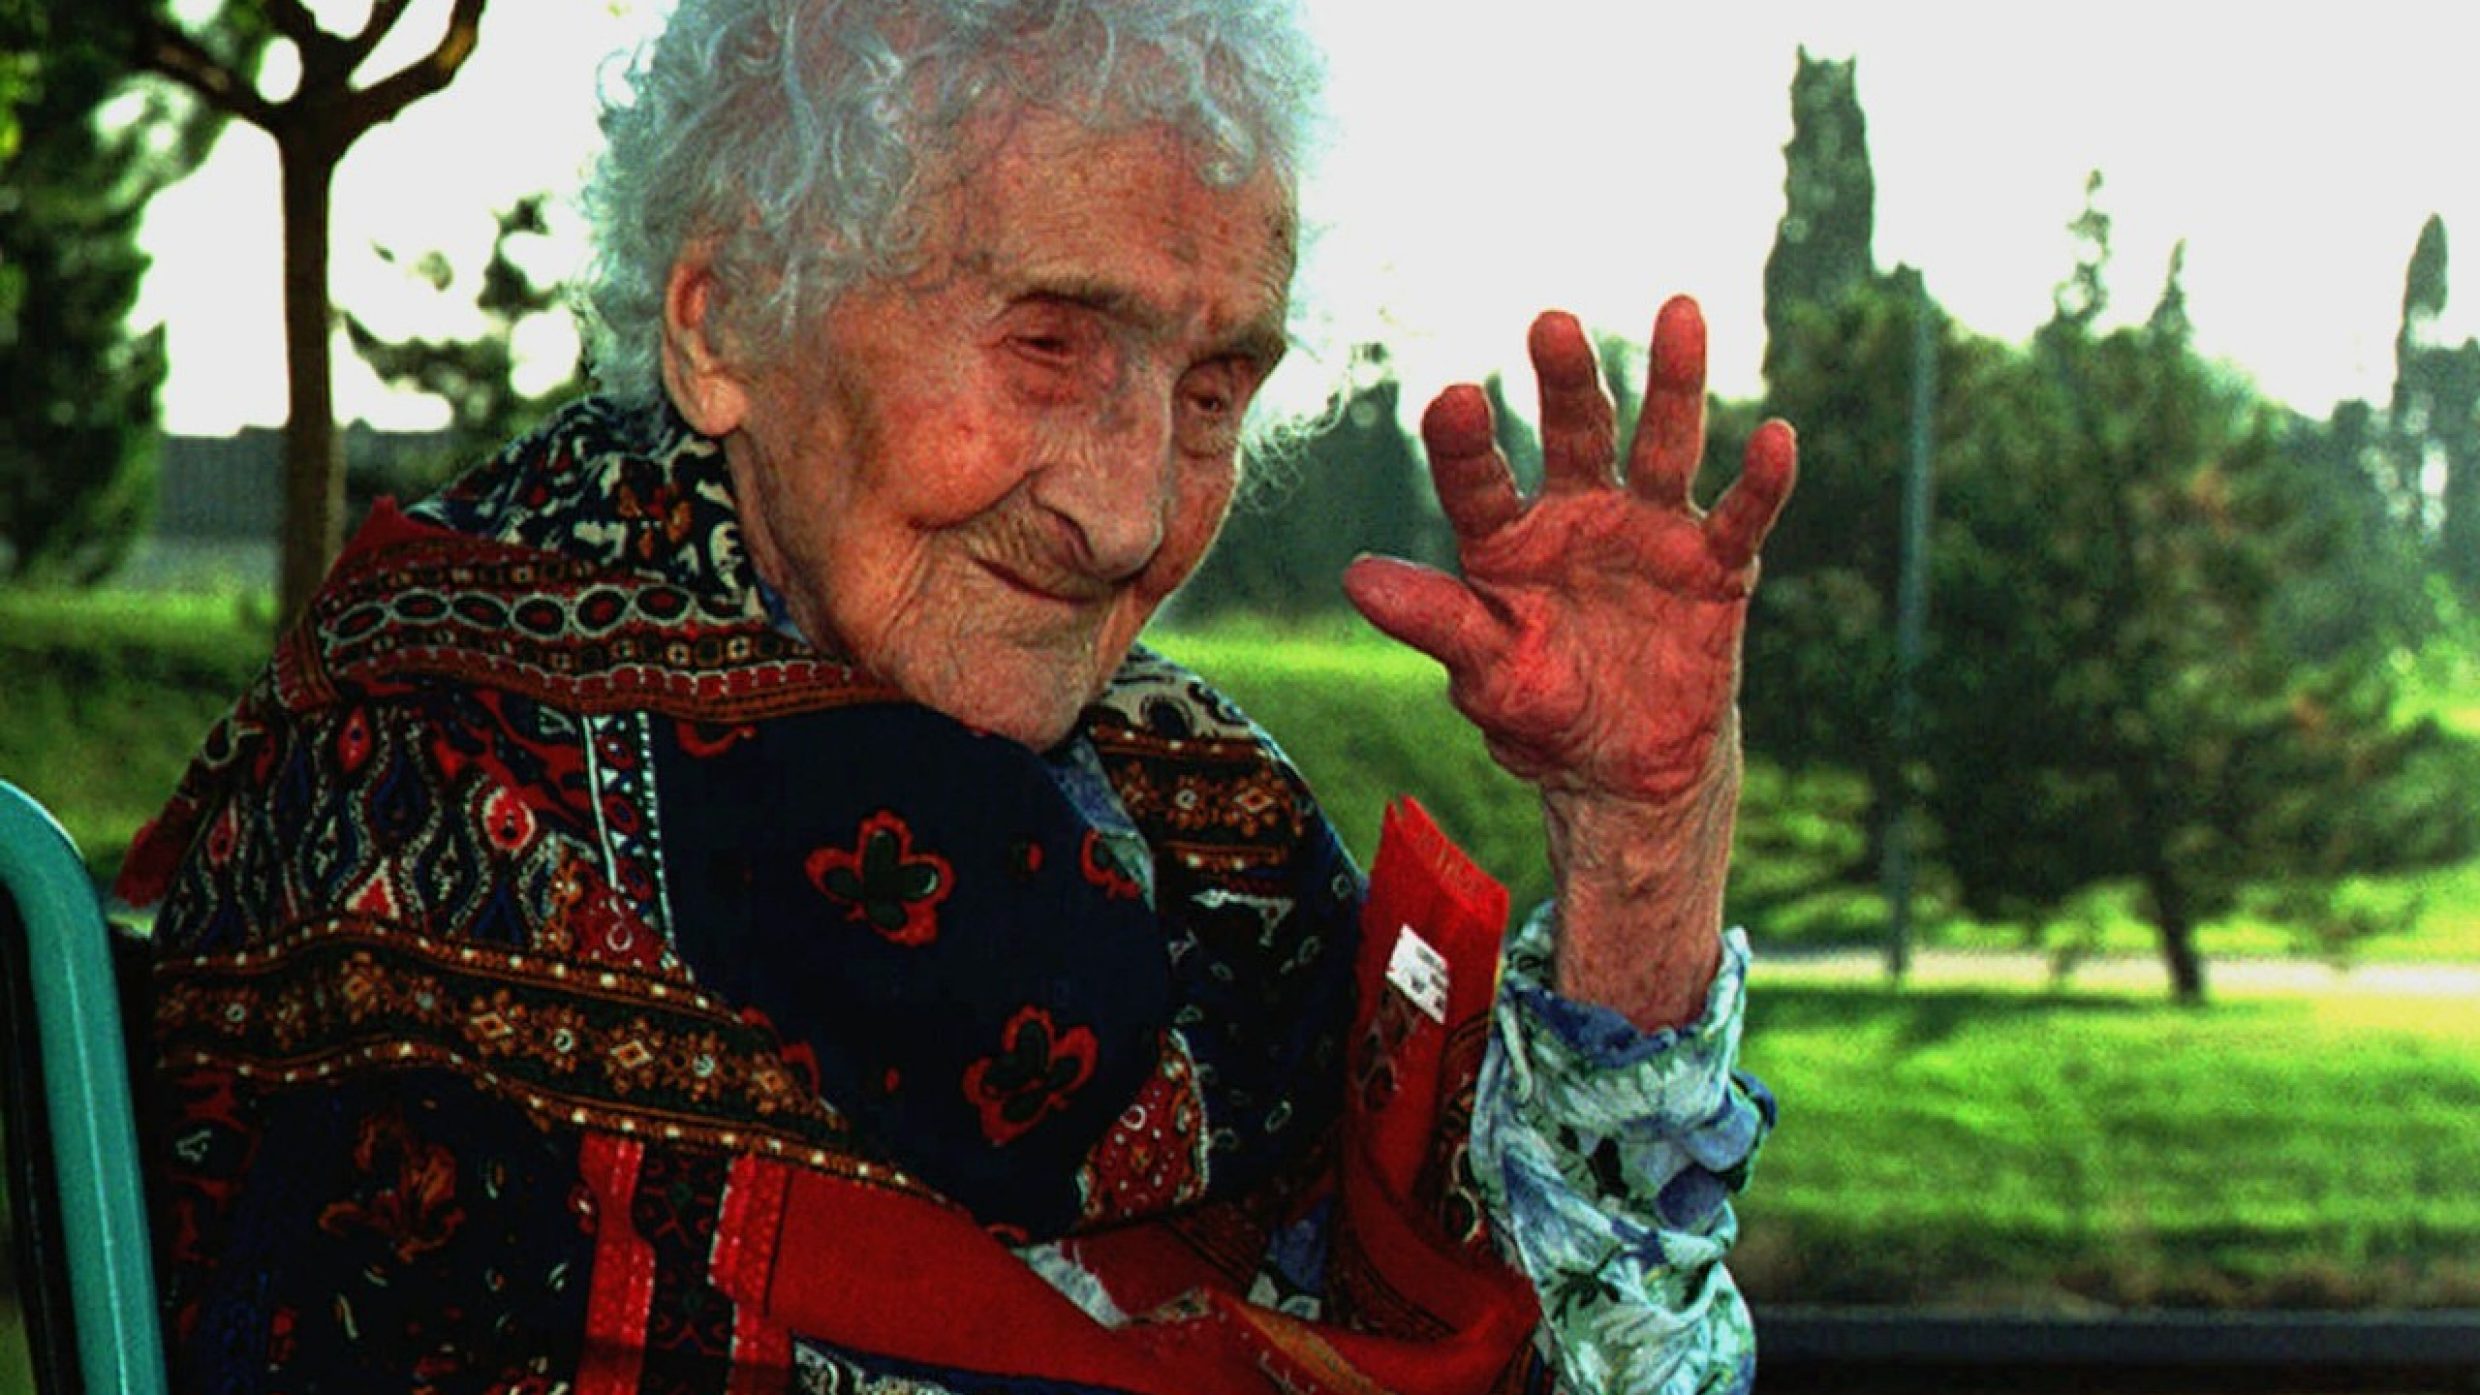 Avec une longévité moyenne de près de 72 ans, l’homme compte parmi les dix êtres vivants qui vivent le plus longtemps. Le record officiel est détenu par la Française Jeanne Calment, qui s’est éteinte à l’âge de 122 ans (1875 – 1997).